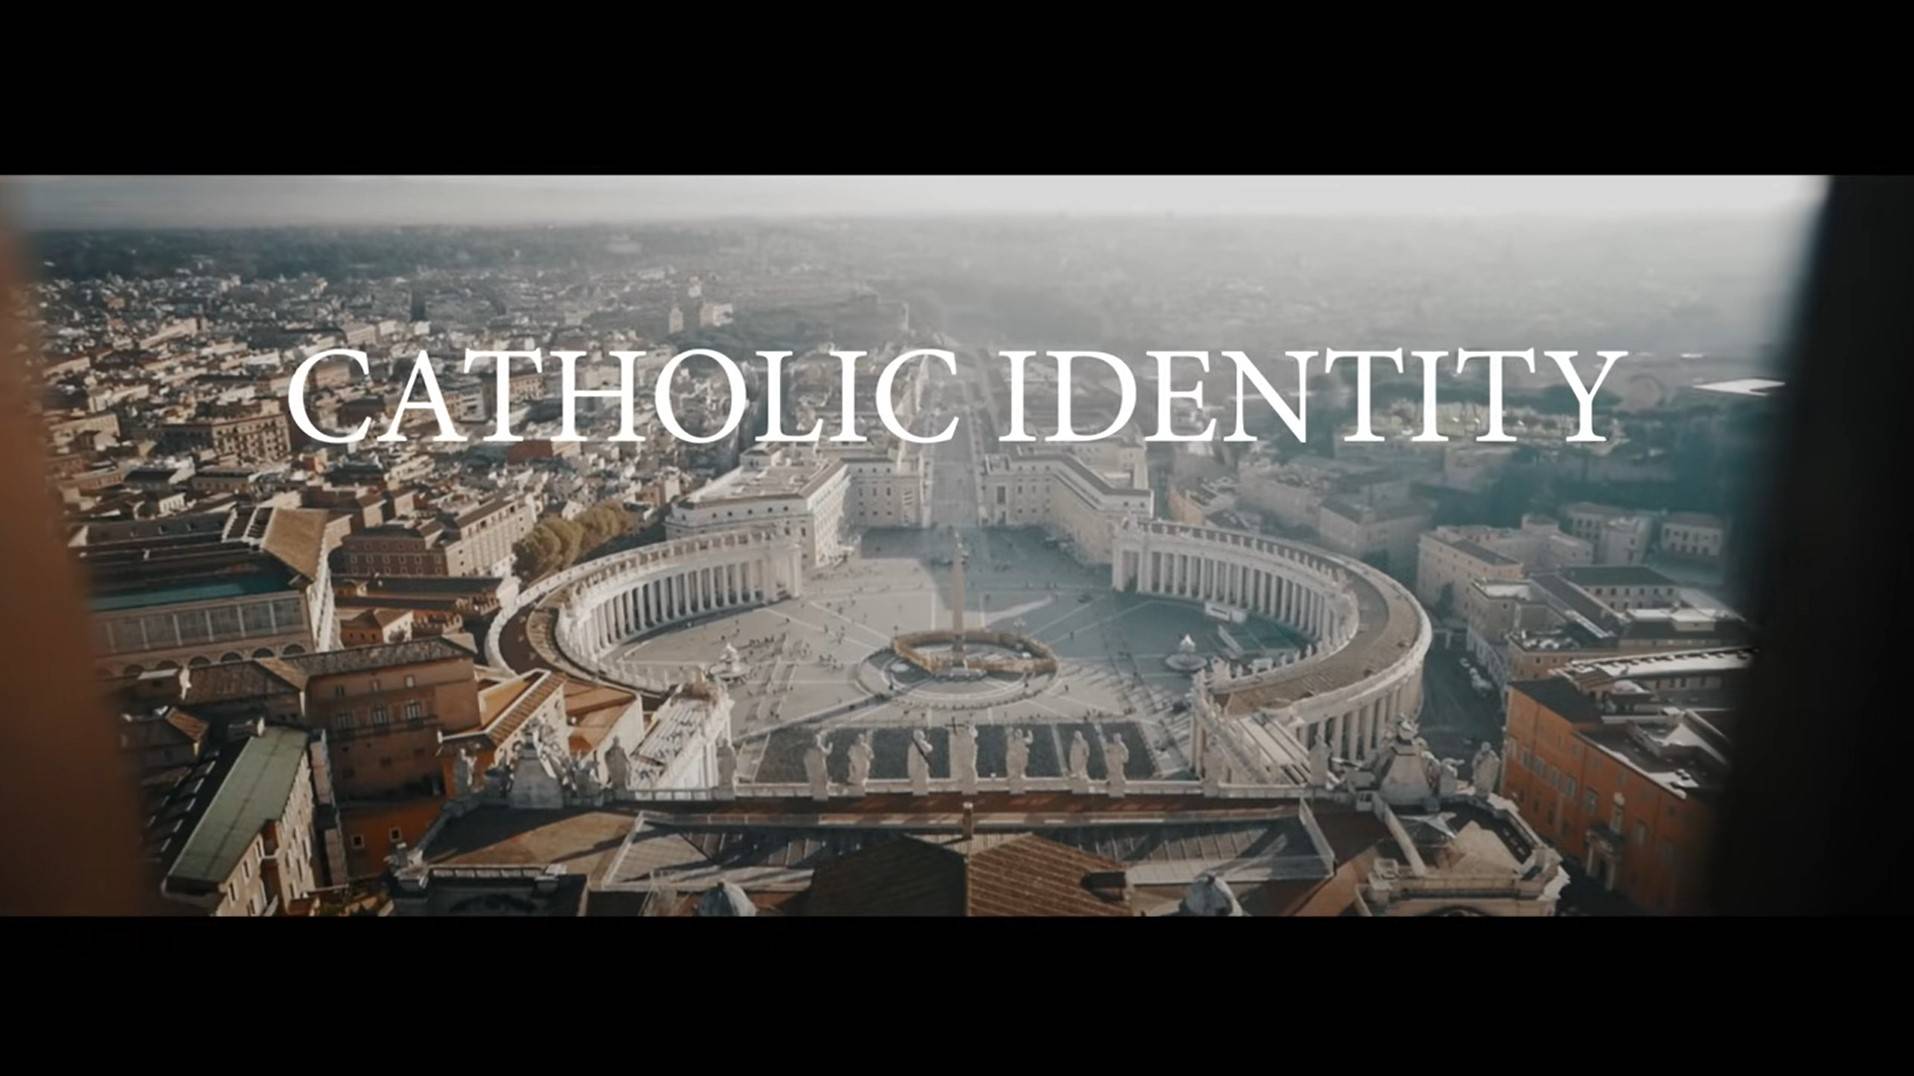 Our Catholic Identity